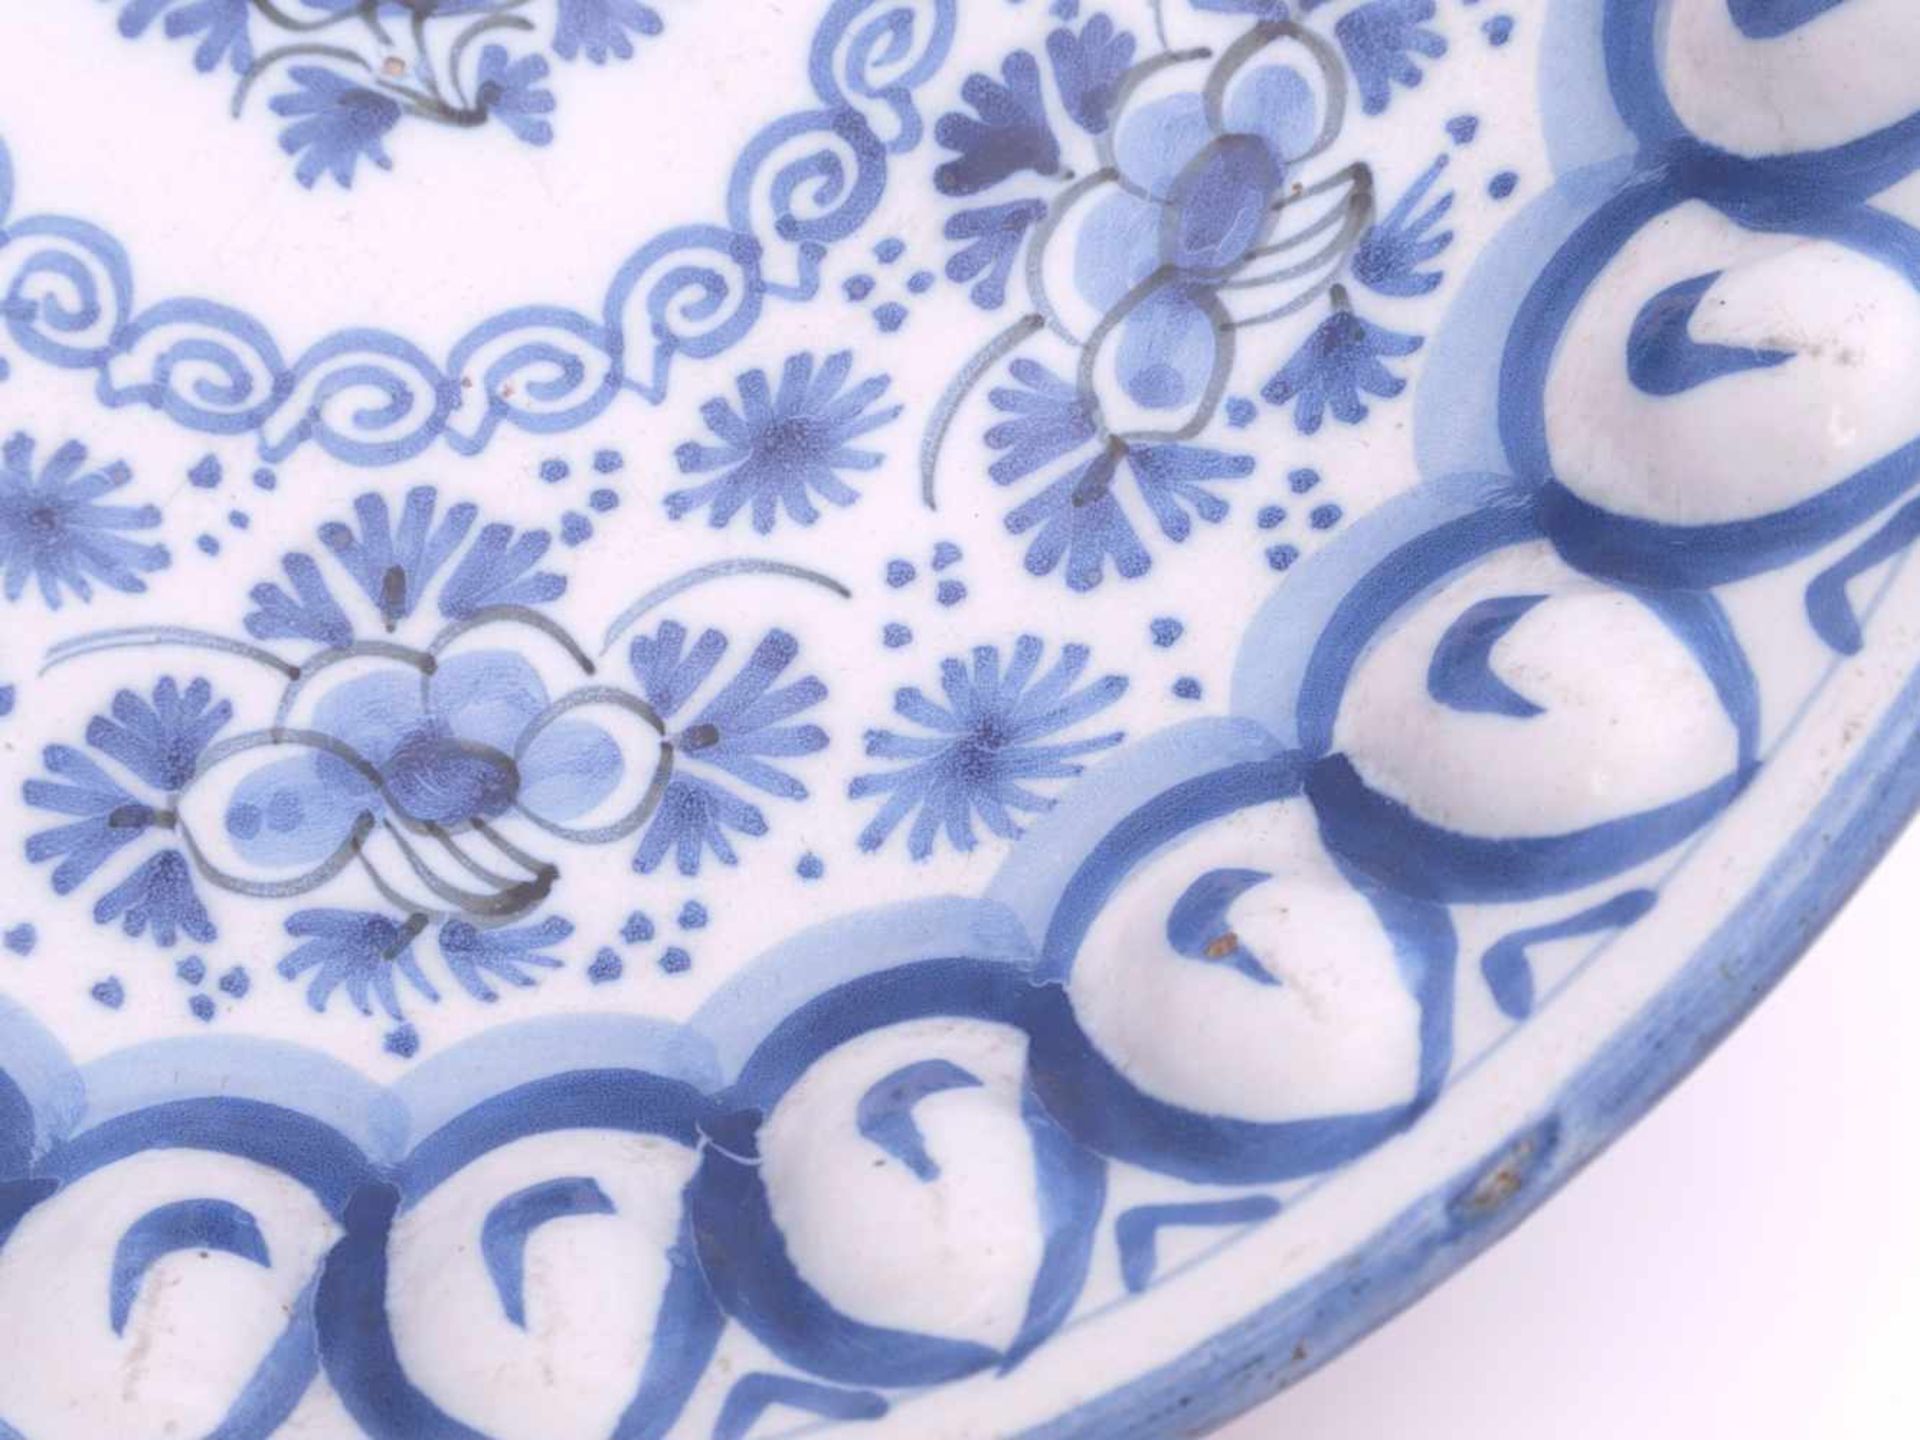 Fayence Buckelplatte 19. Jhd.Weiße Zinnglasur, schwarz akzentuierte Blaumalerei in floralen Motiven. - Bild 4 aus 6